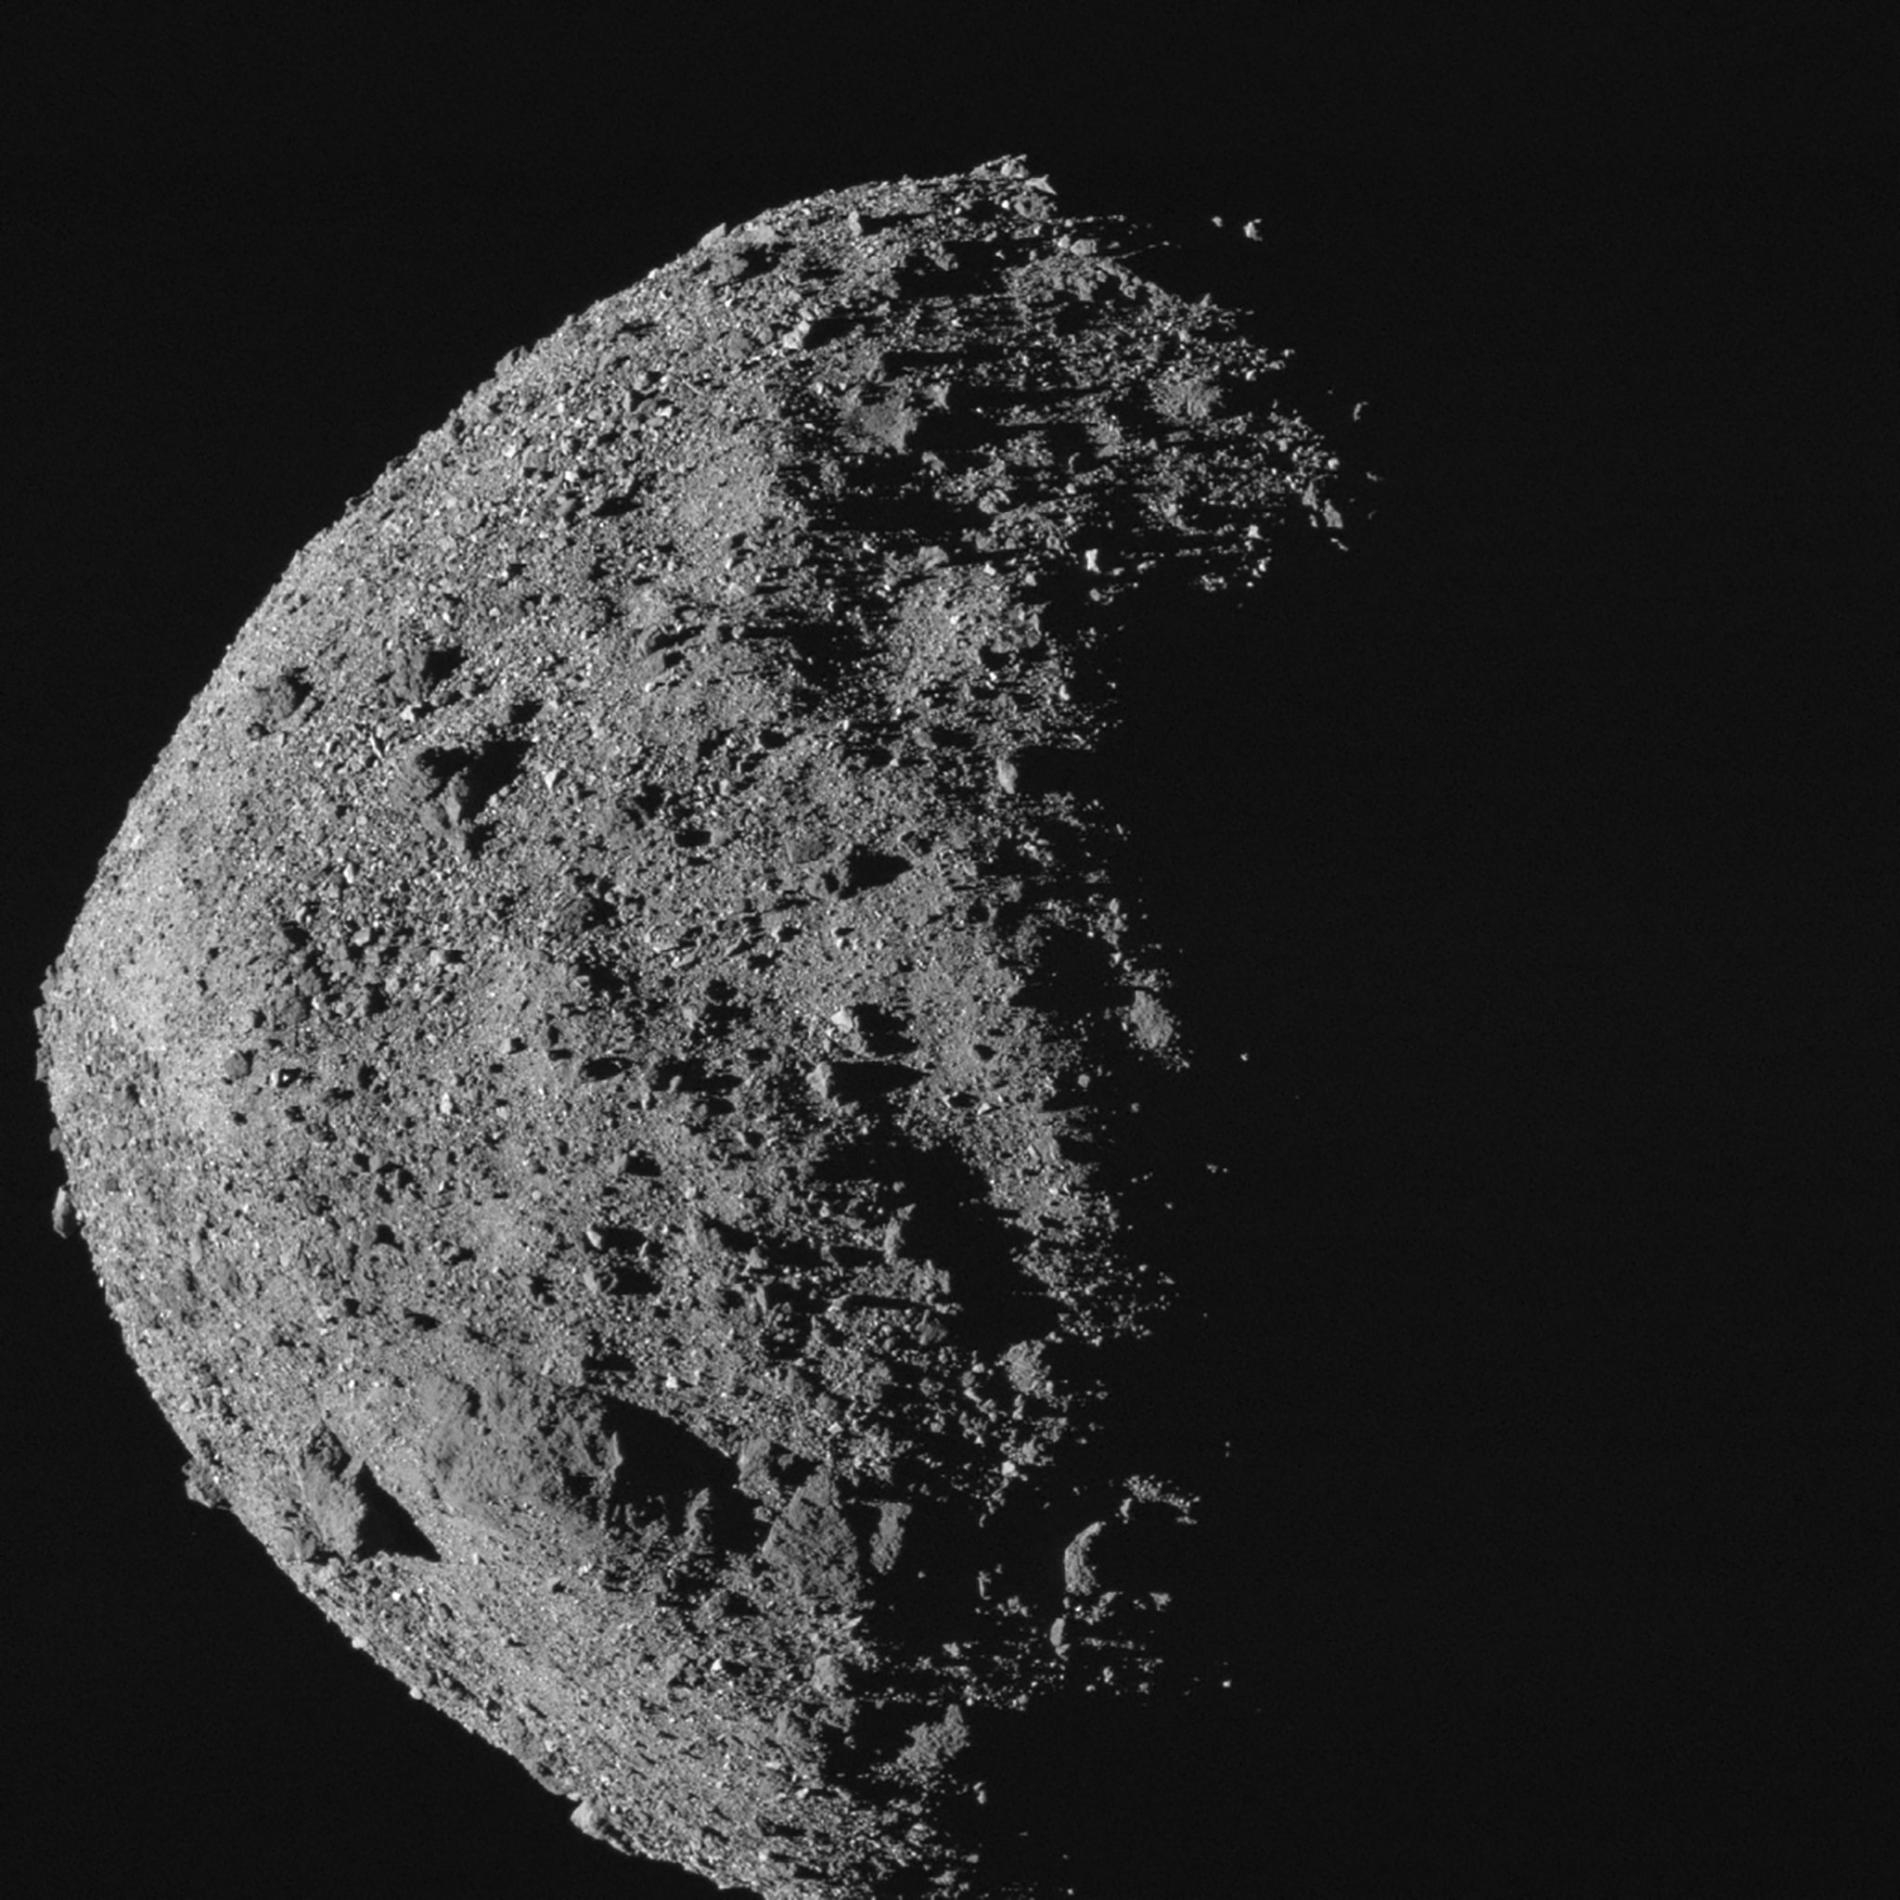 比帝國大廈更高也更寬的近地小行星貝努，是未來150年內最有可能撞擊地球的已知小行星。自2018年底，歐西里斯號探測器就繞行著這顆小行星進行詳細調查，揭開它的神祕面紗。PHOTOGRAPHY BY NASA/GODDARD/UNIVERSITY OF ARIZONA